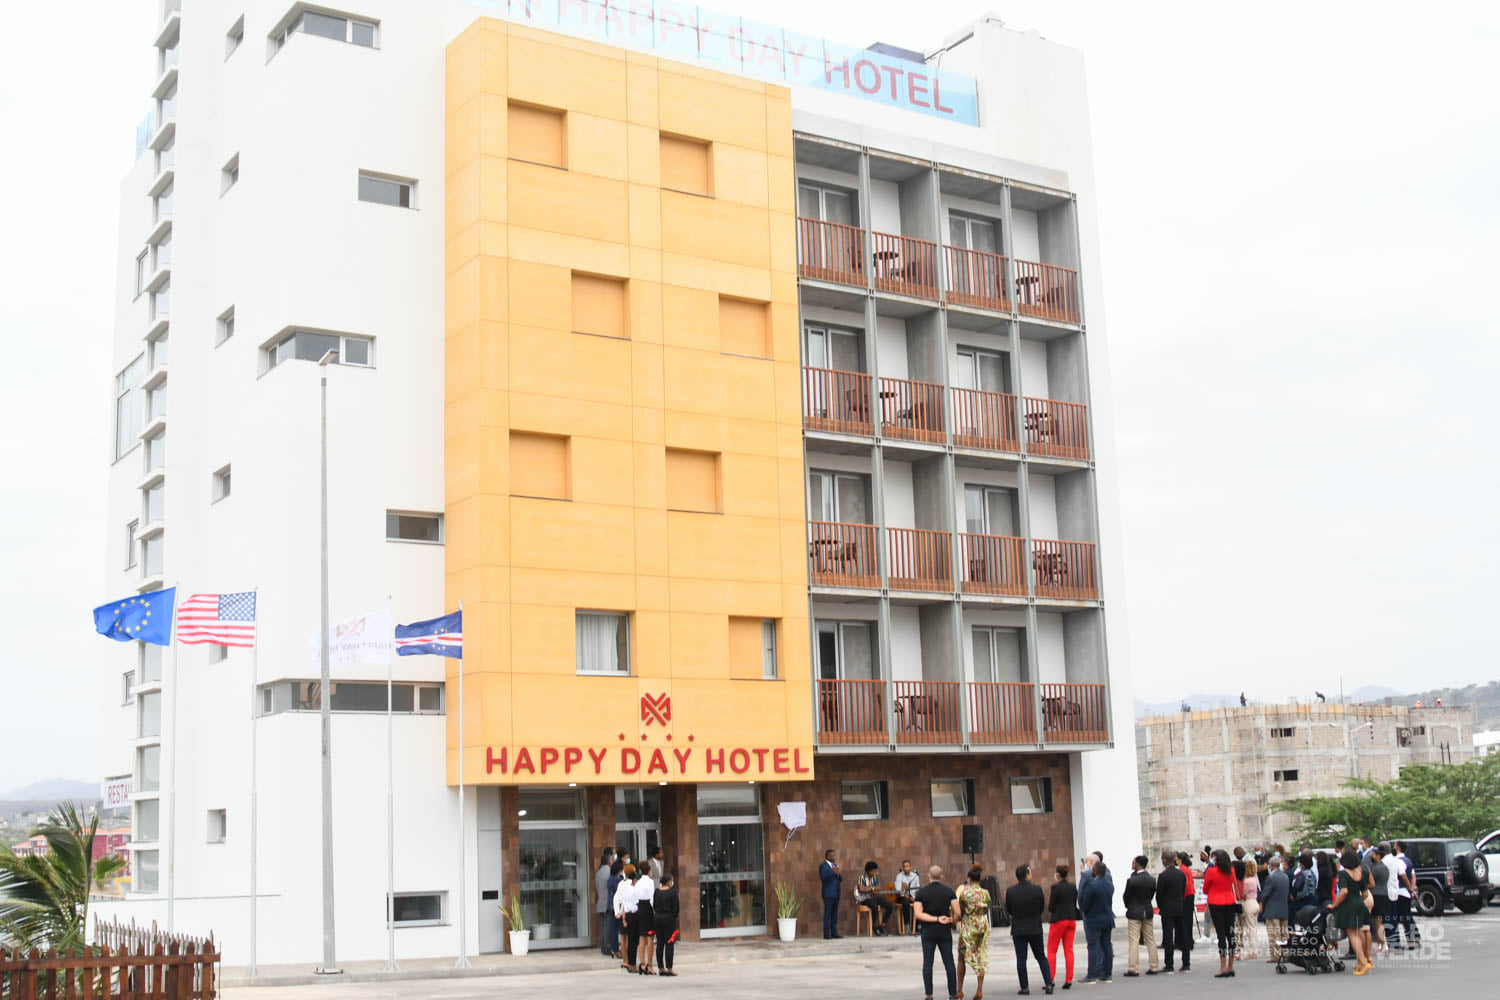 O Happy Day Hotel é mais um importante e real exemplo desta parceria Público/Privado.